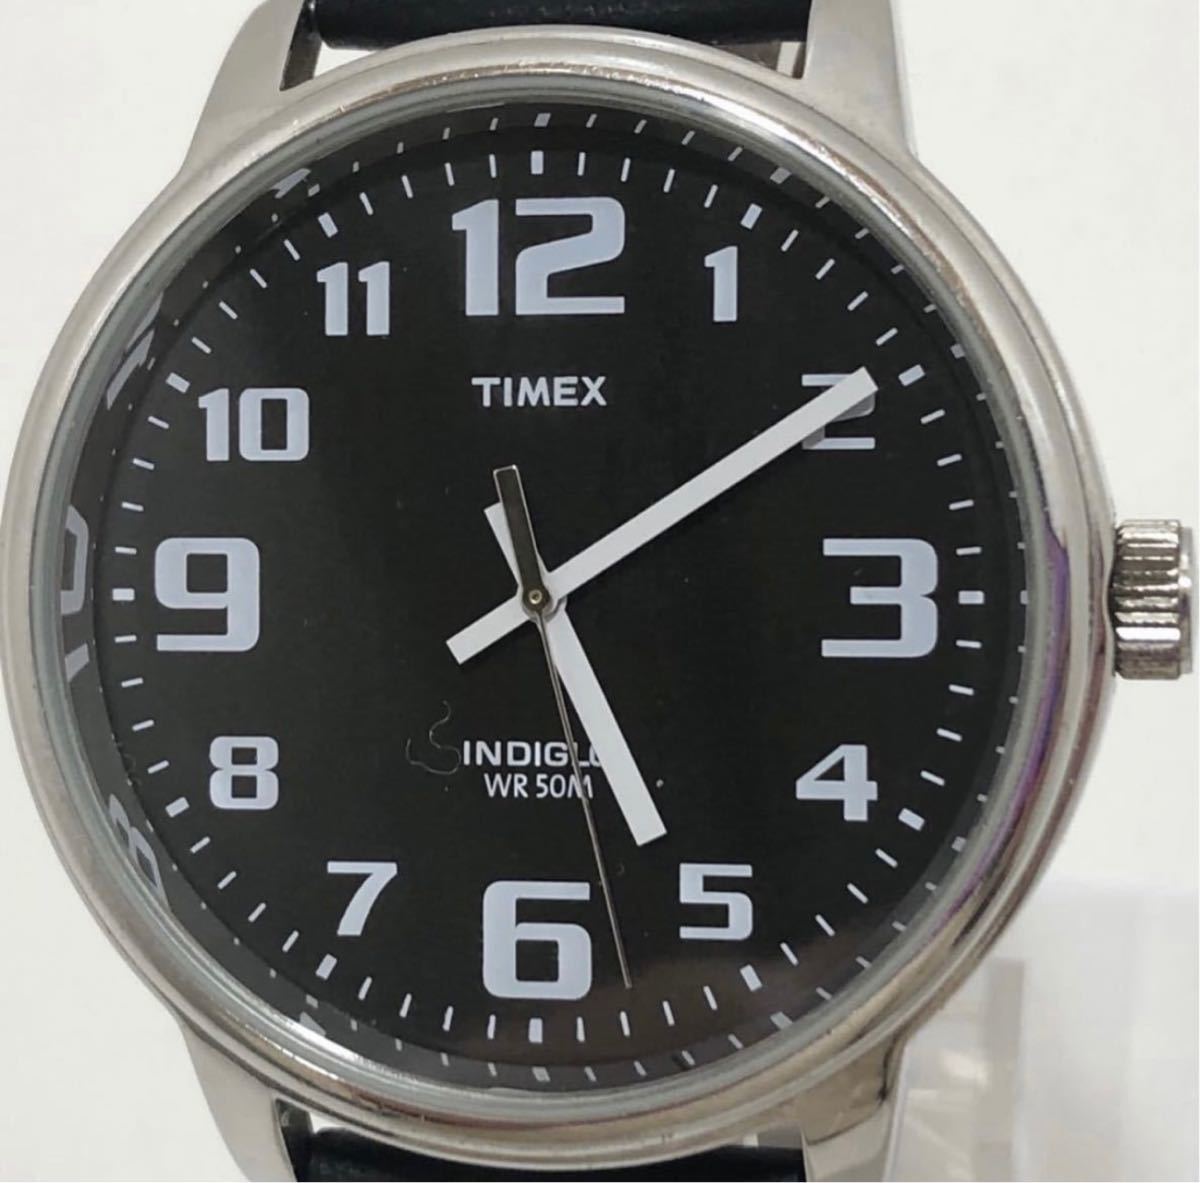 T292 TIMEX 50M INDIGLO WR クォーツ タイメックス メンズ腕時計 